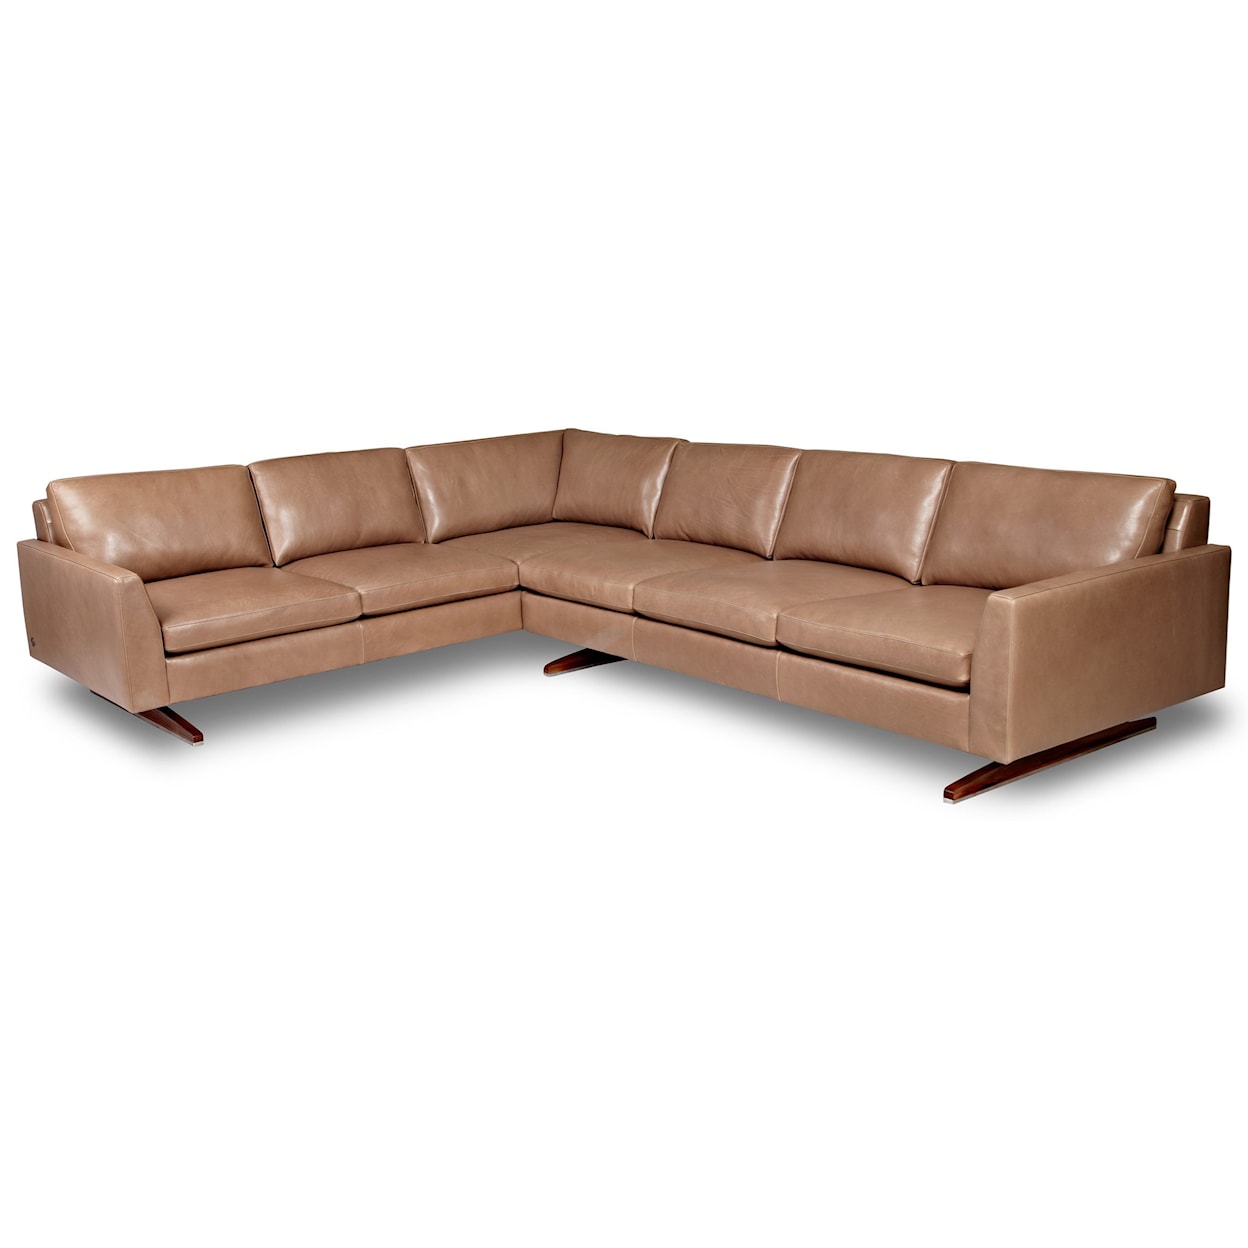 American Leather Flynn 5-Seat Sec Sofa w/ Left Arm Sitting Sofa